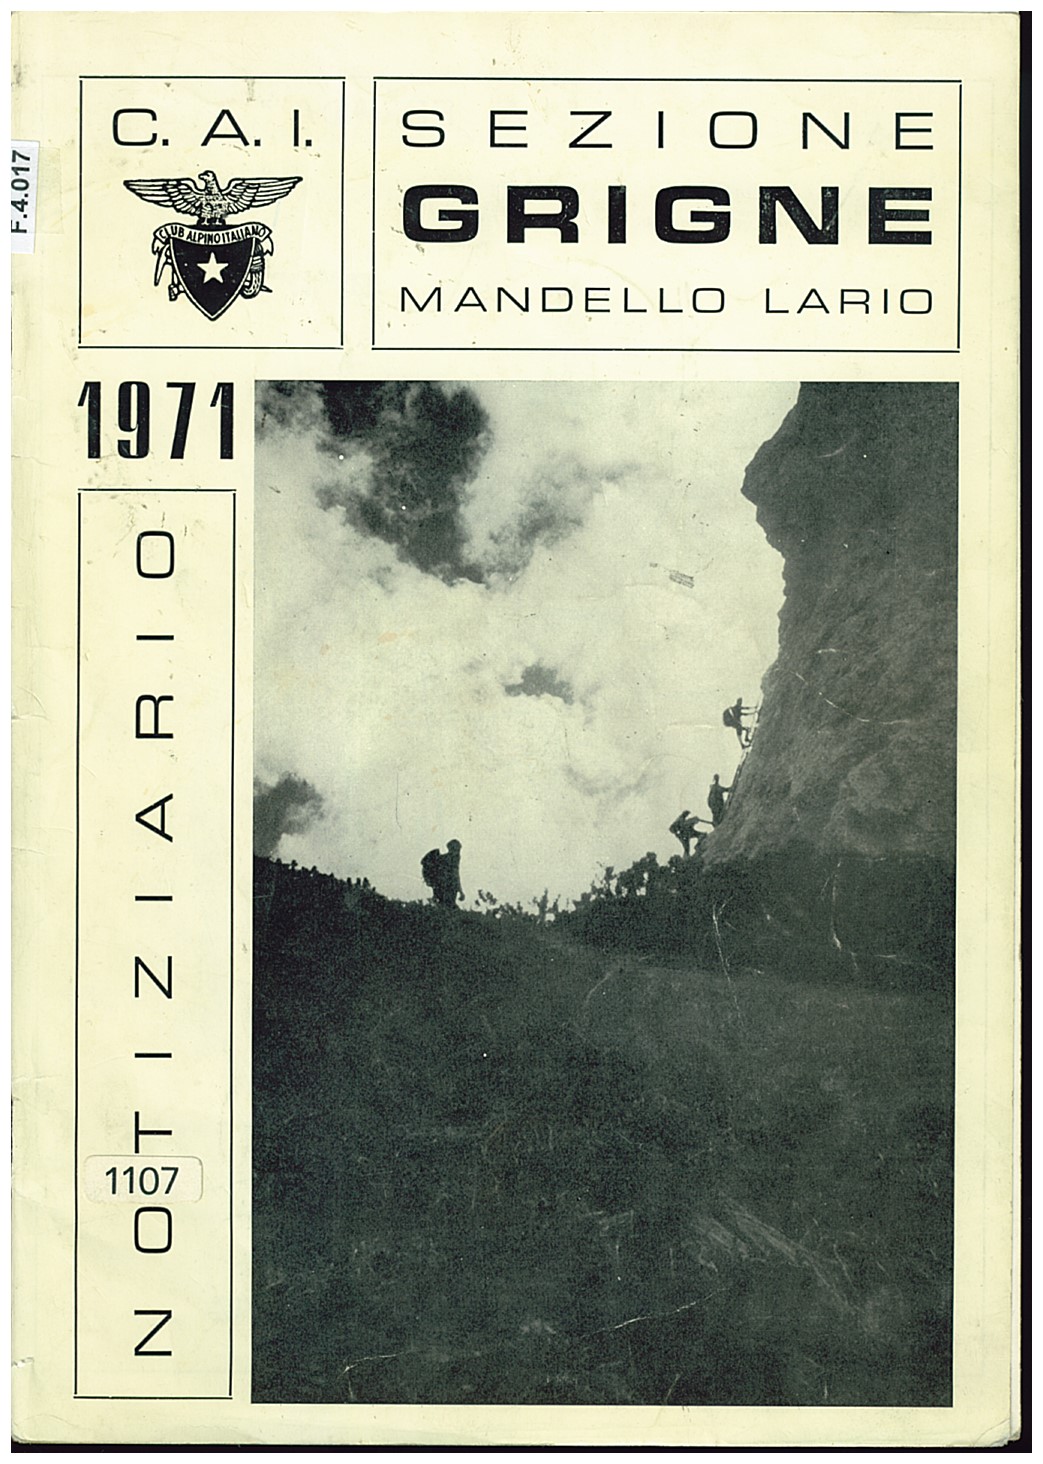 Copertina di Notiziario 1971 Sezione Grigne Mandello Lario